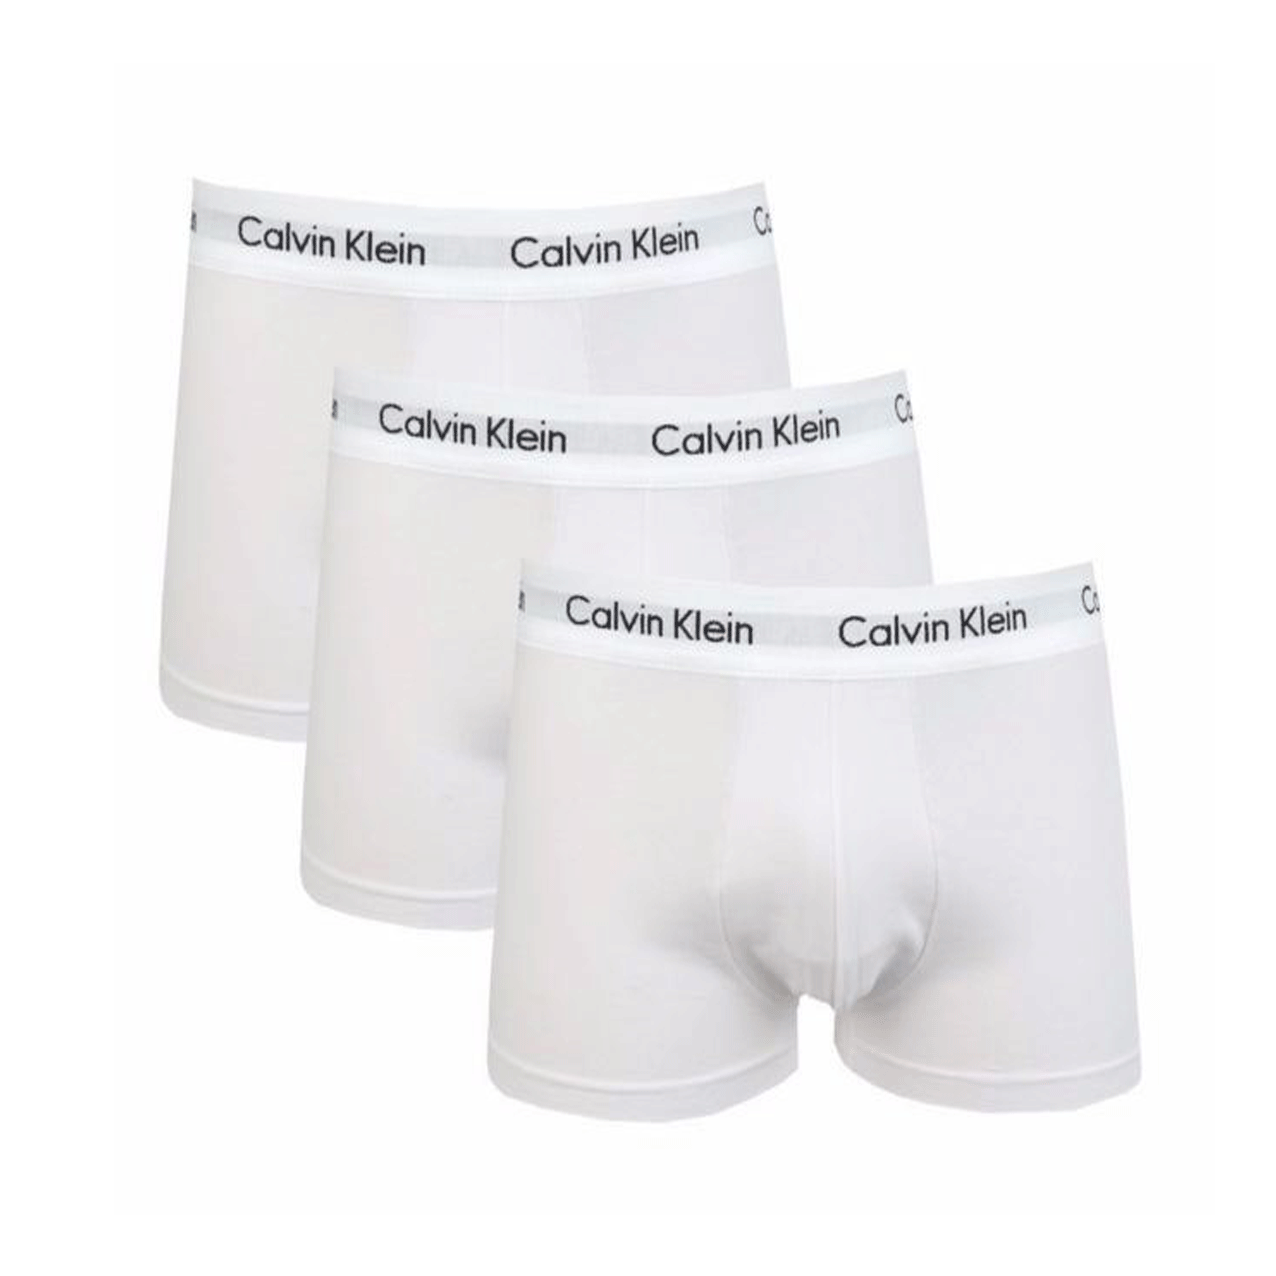 Men's Calvin Klein Cotton 3 Pack Underwear Boxers Low Rise Trunks Briefs U2662G-100 freeshipping - Benson66